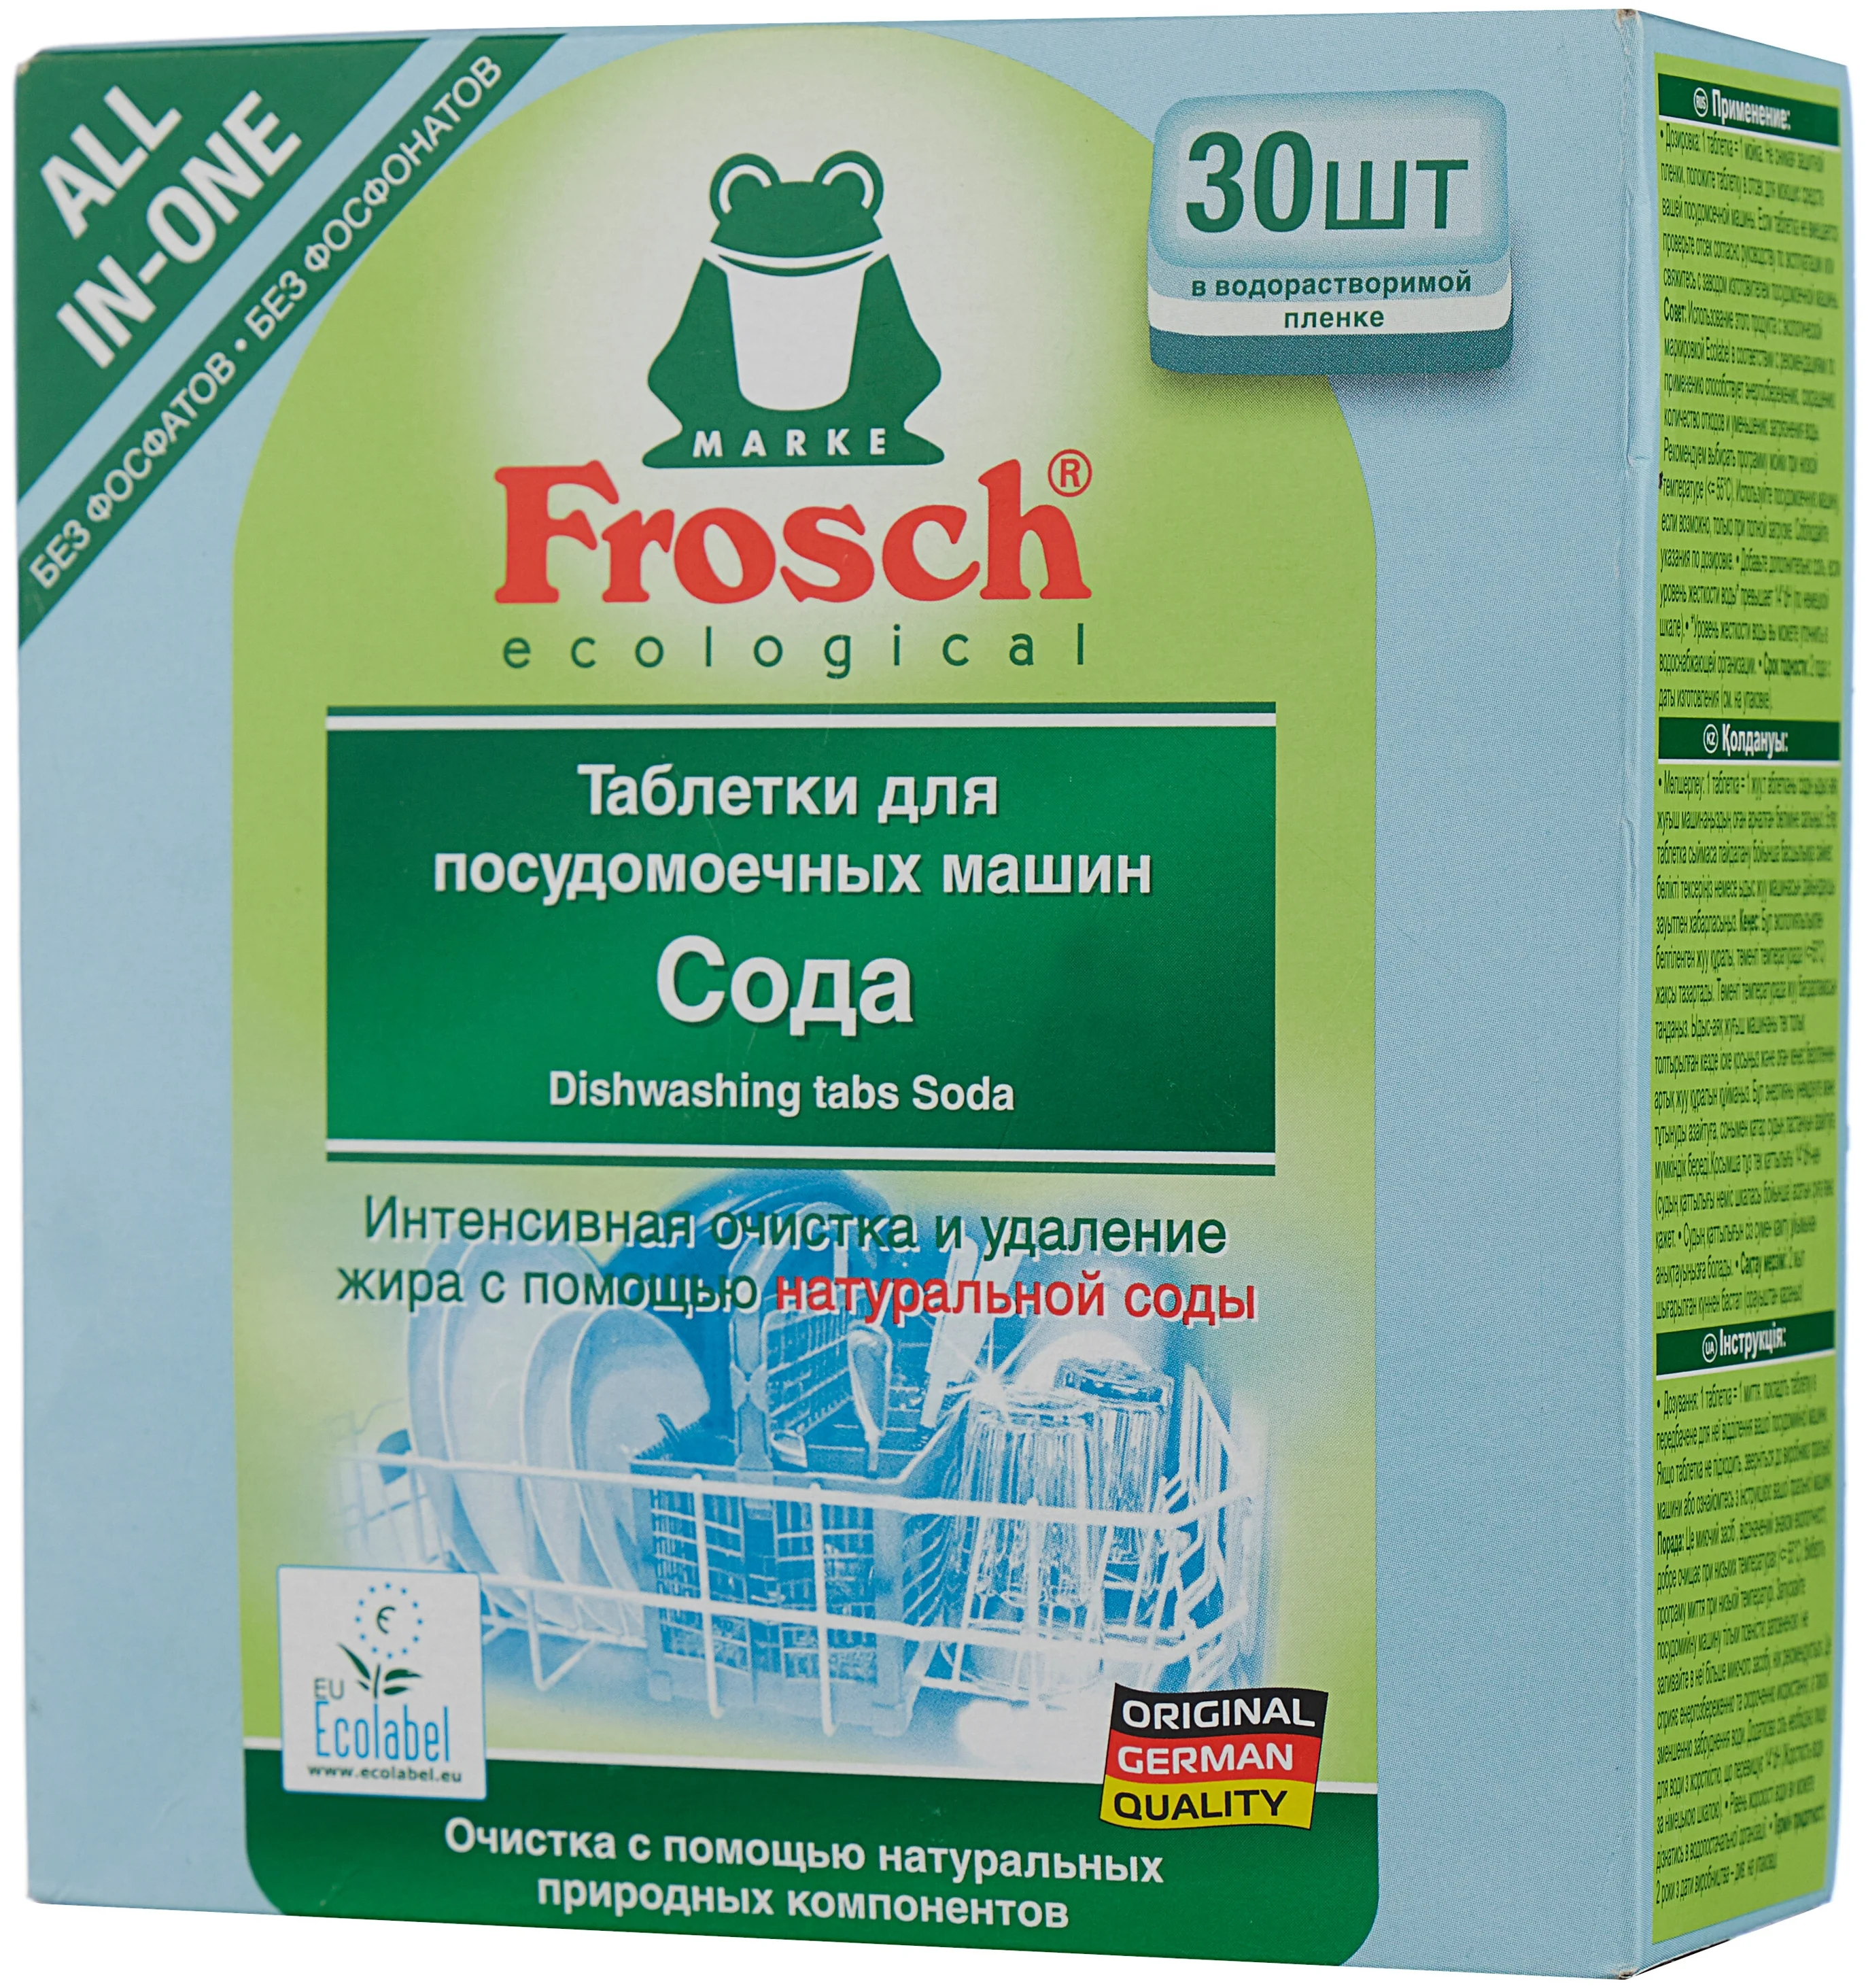 Frosch (сода) - особенности: не тестировалось на животных, биоразлагаемое, растворимая оболочка